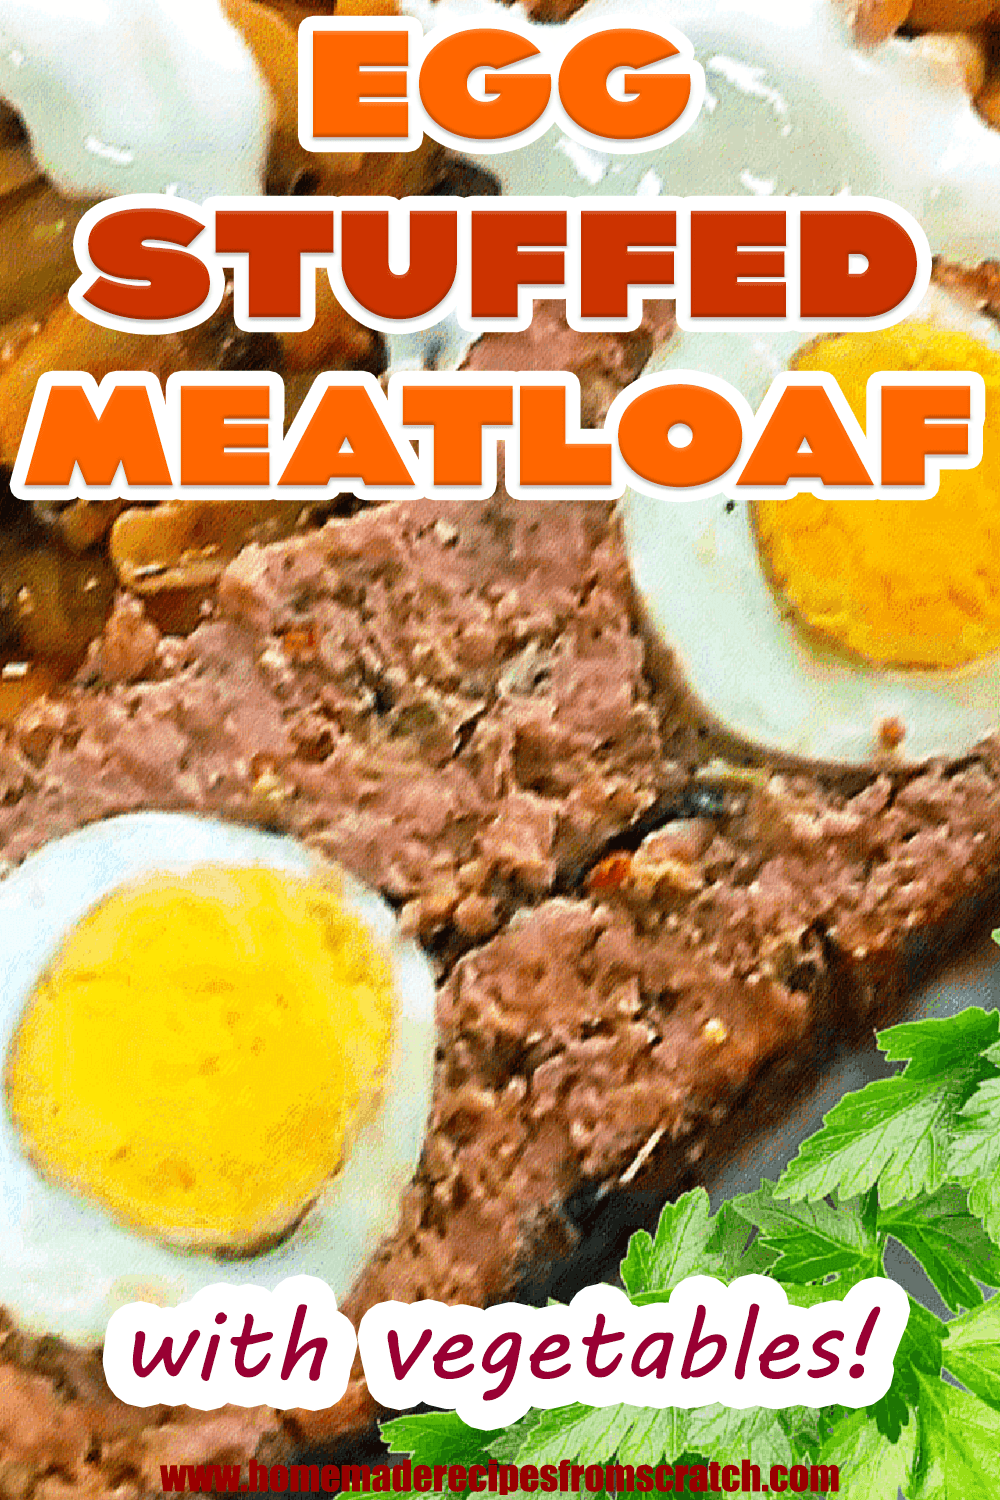 Classic Egg Stuffed Meatloaf